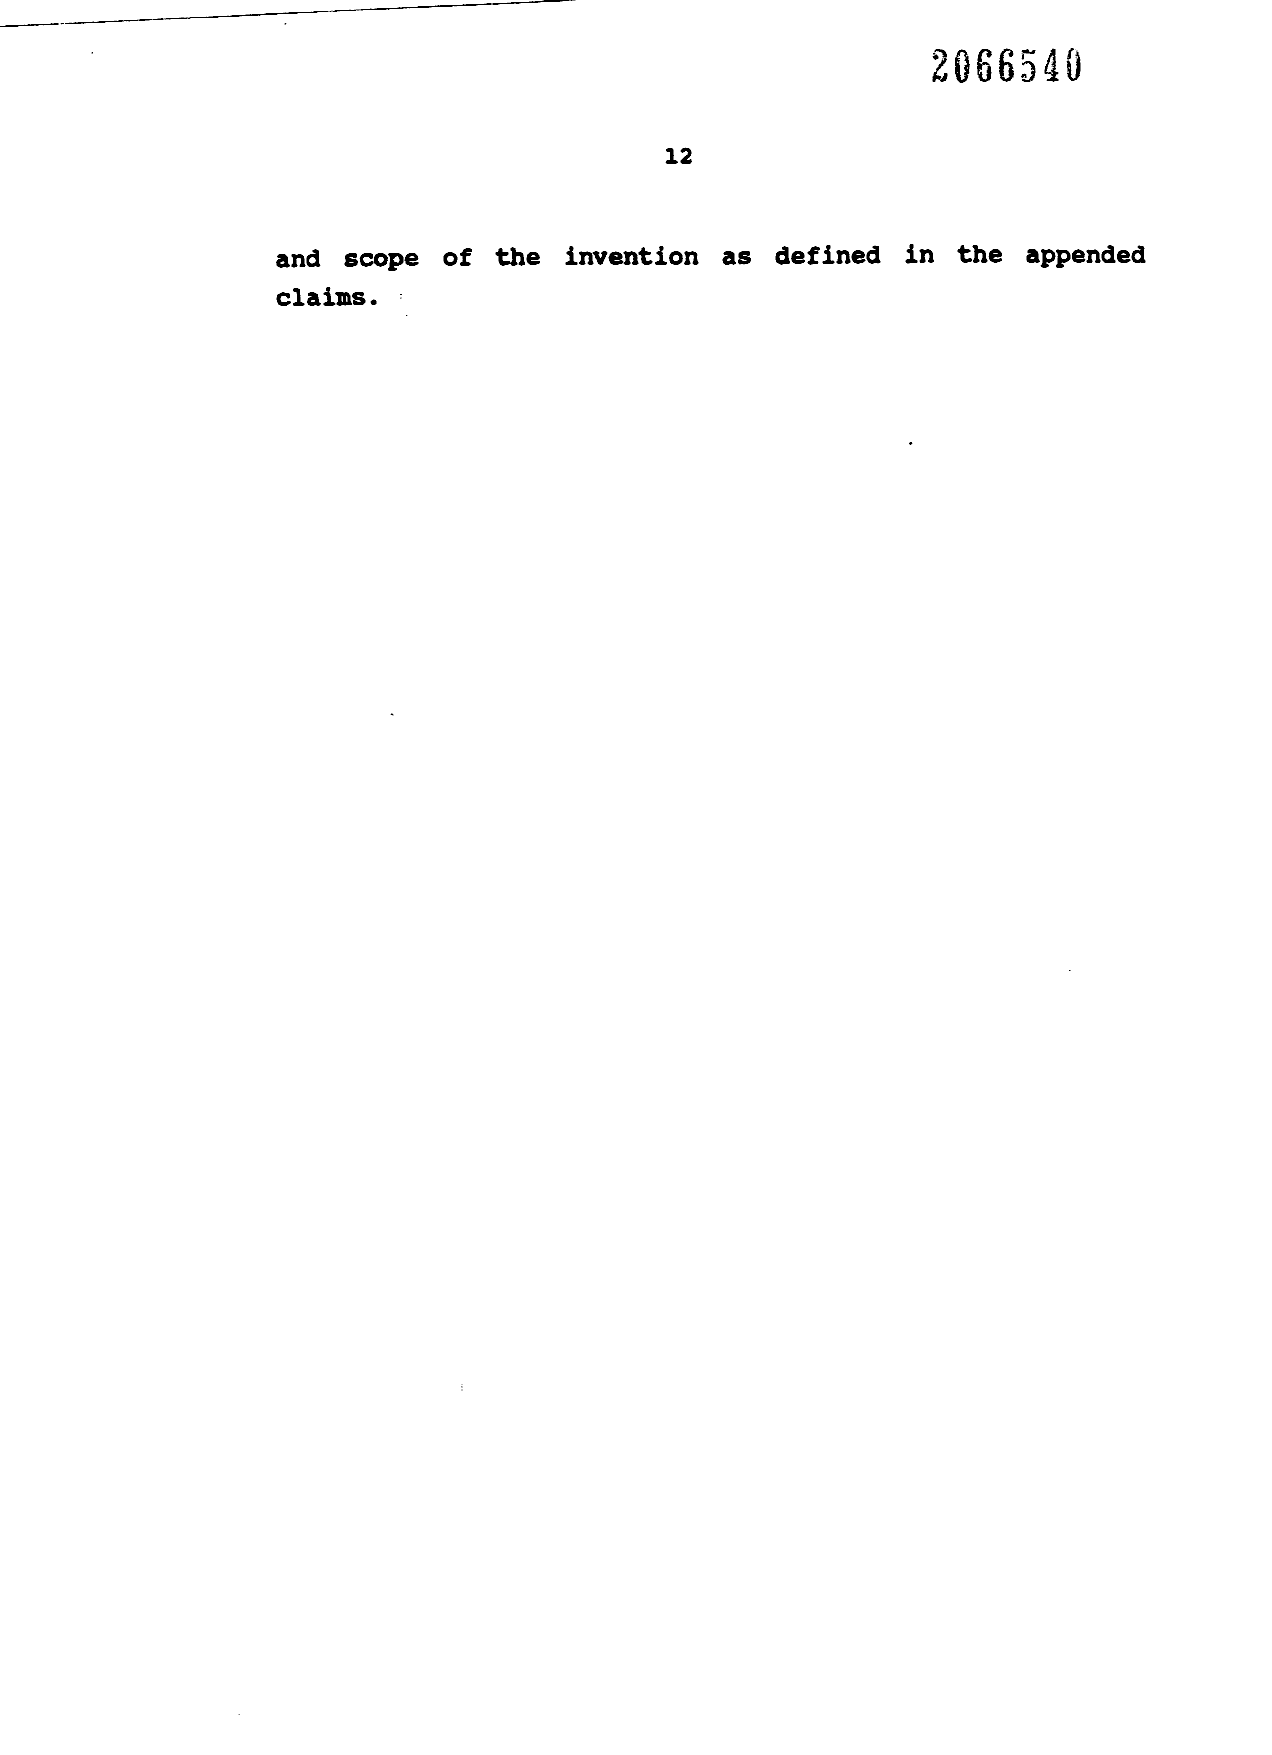 Canadian Patent Document 2066540. Description 19971225. Image 15 of 15